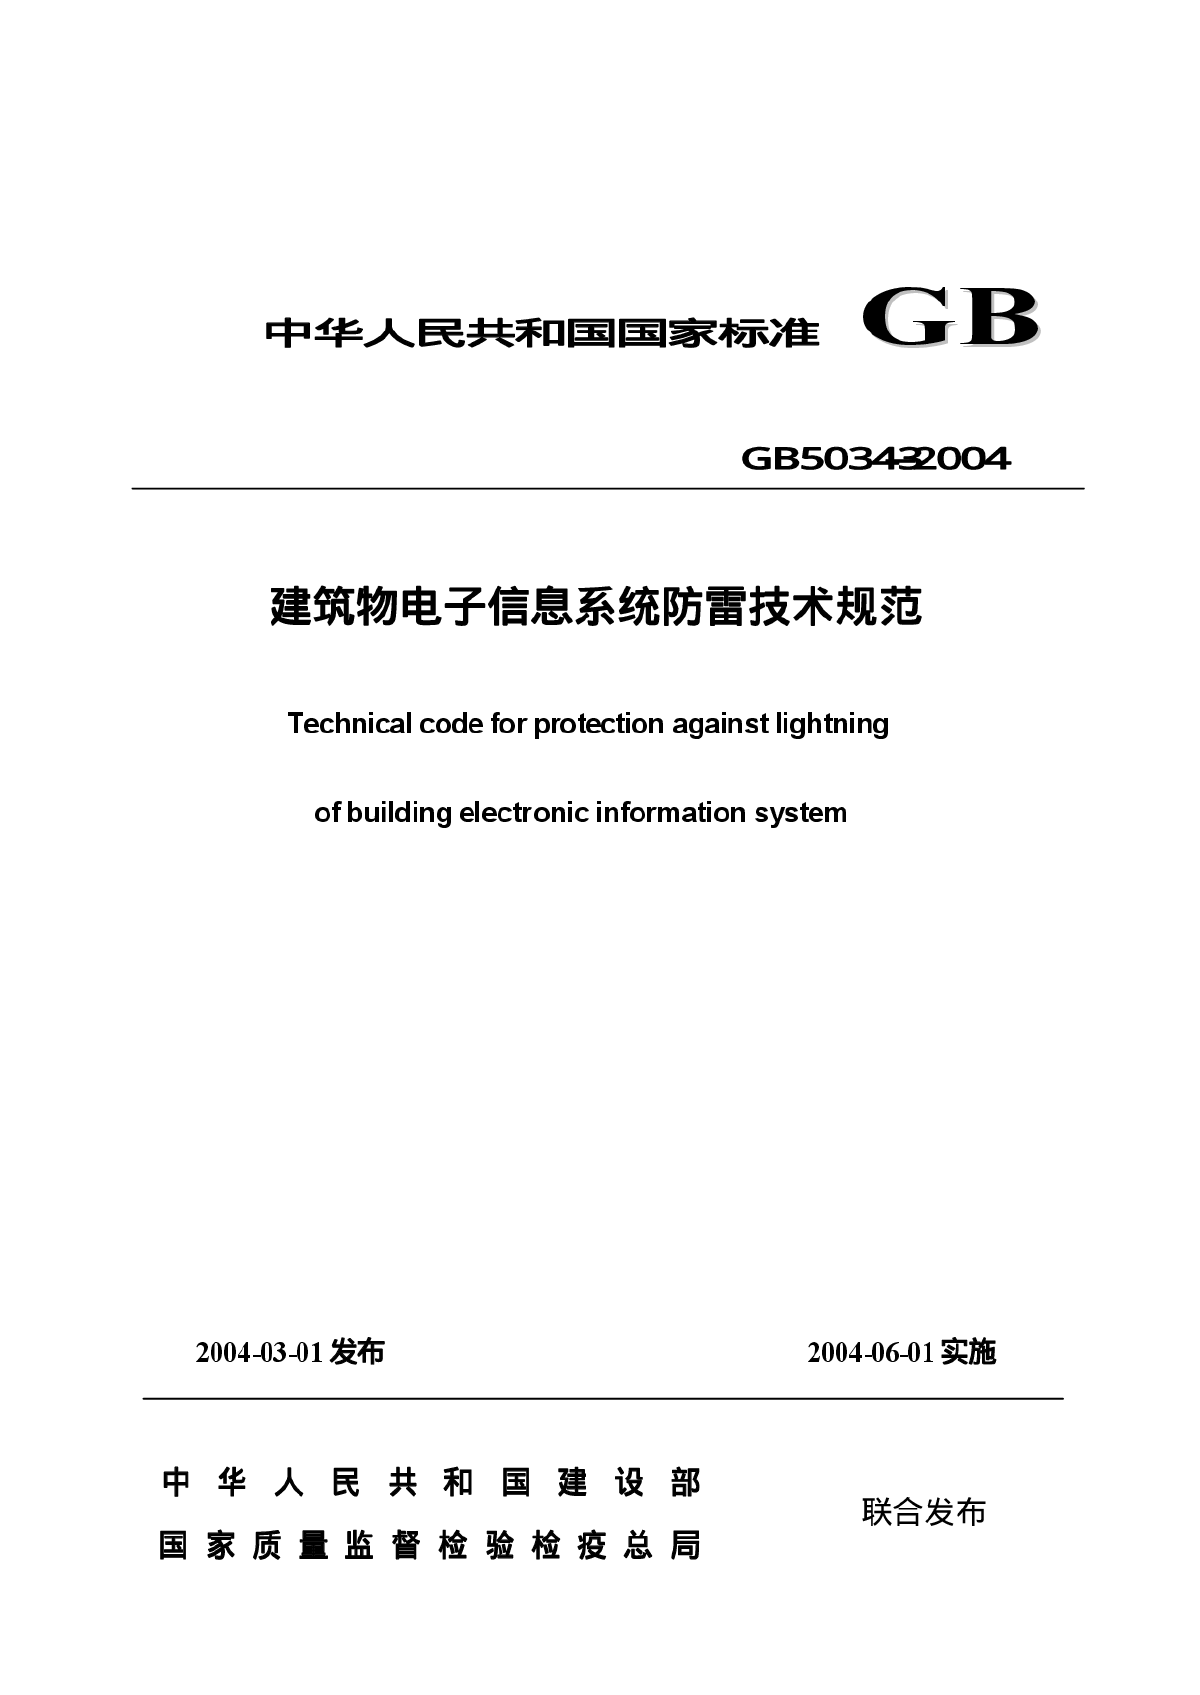 《建筑物电子信息系统防雷技术规范》GB50343-2004